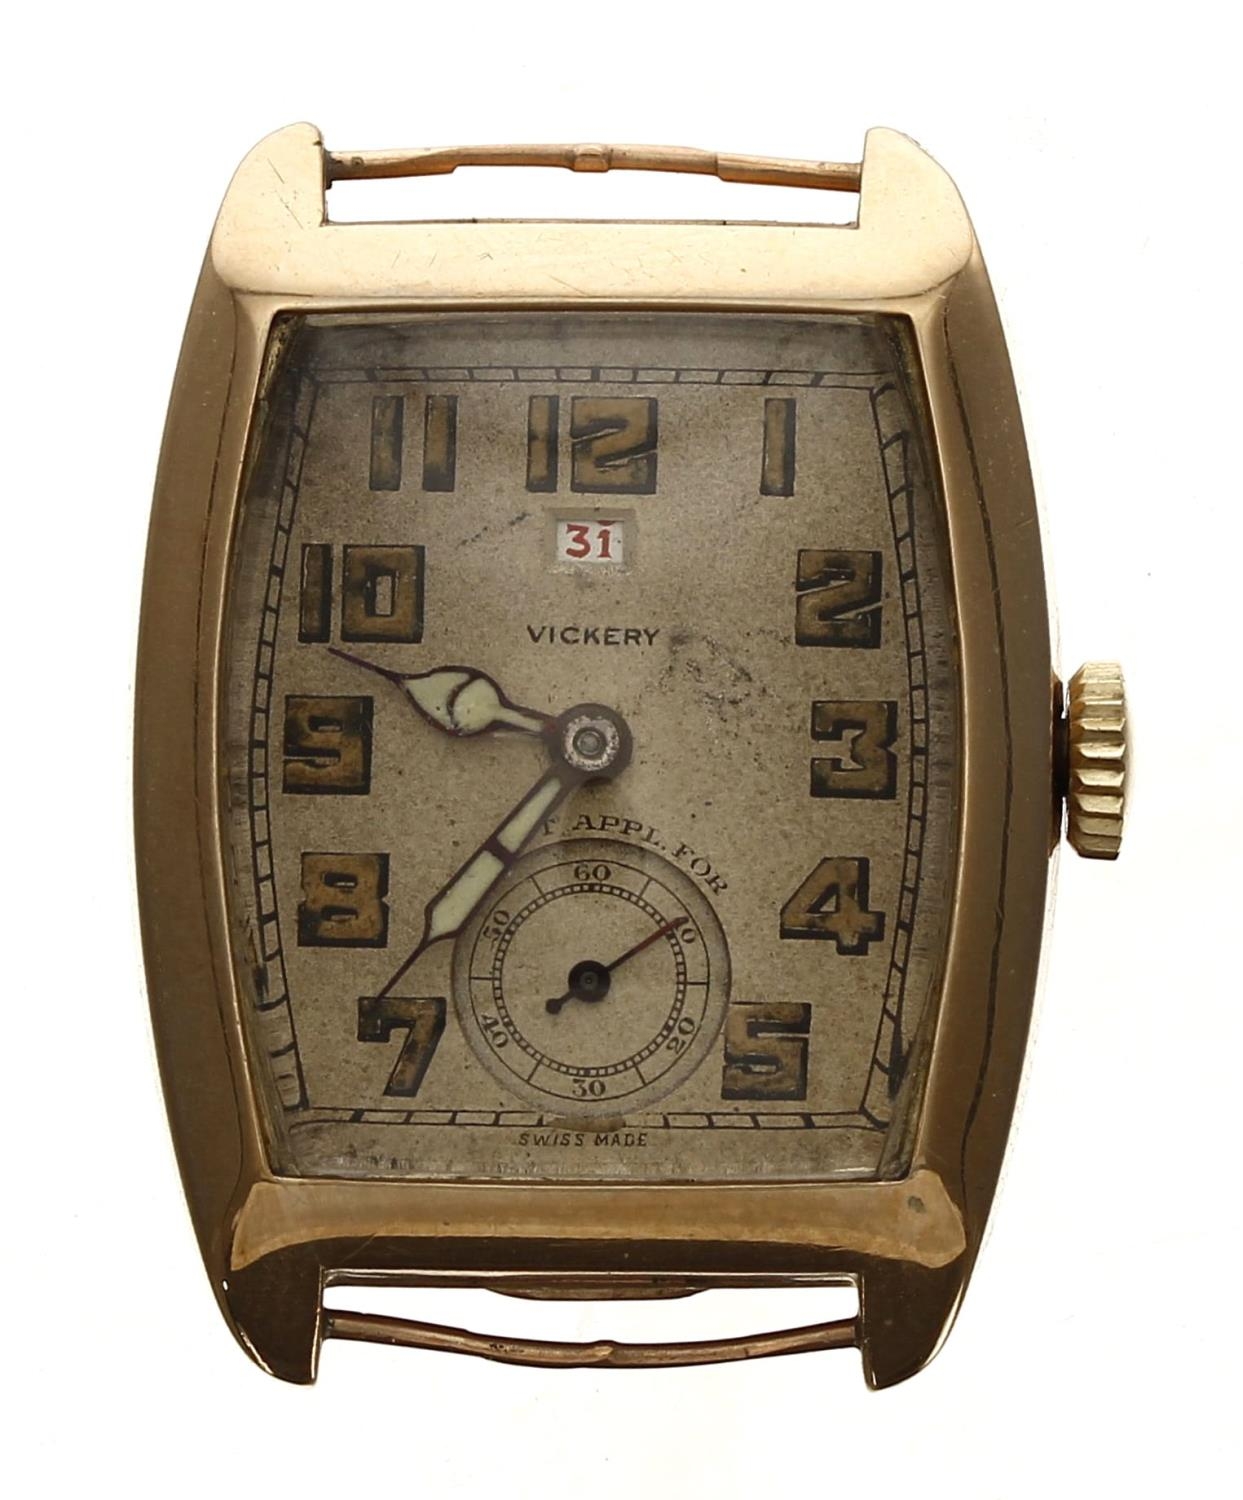 Marleys 9ct rectangular wire-lug gentleman's wristwatch, import hallmarks Glasgow 1930,  rectangular